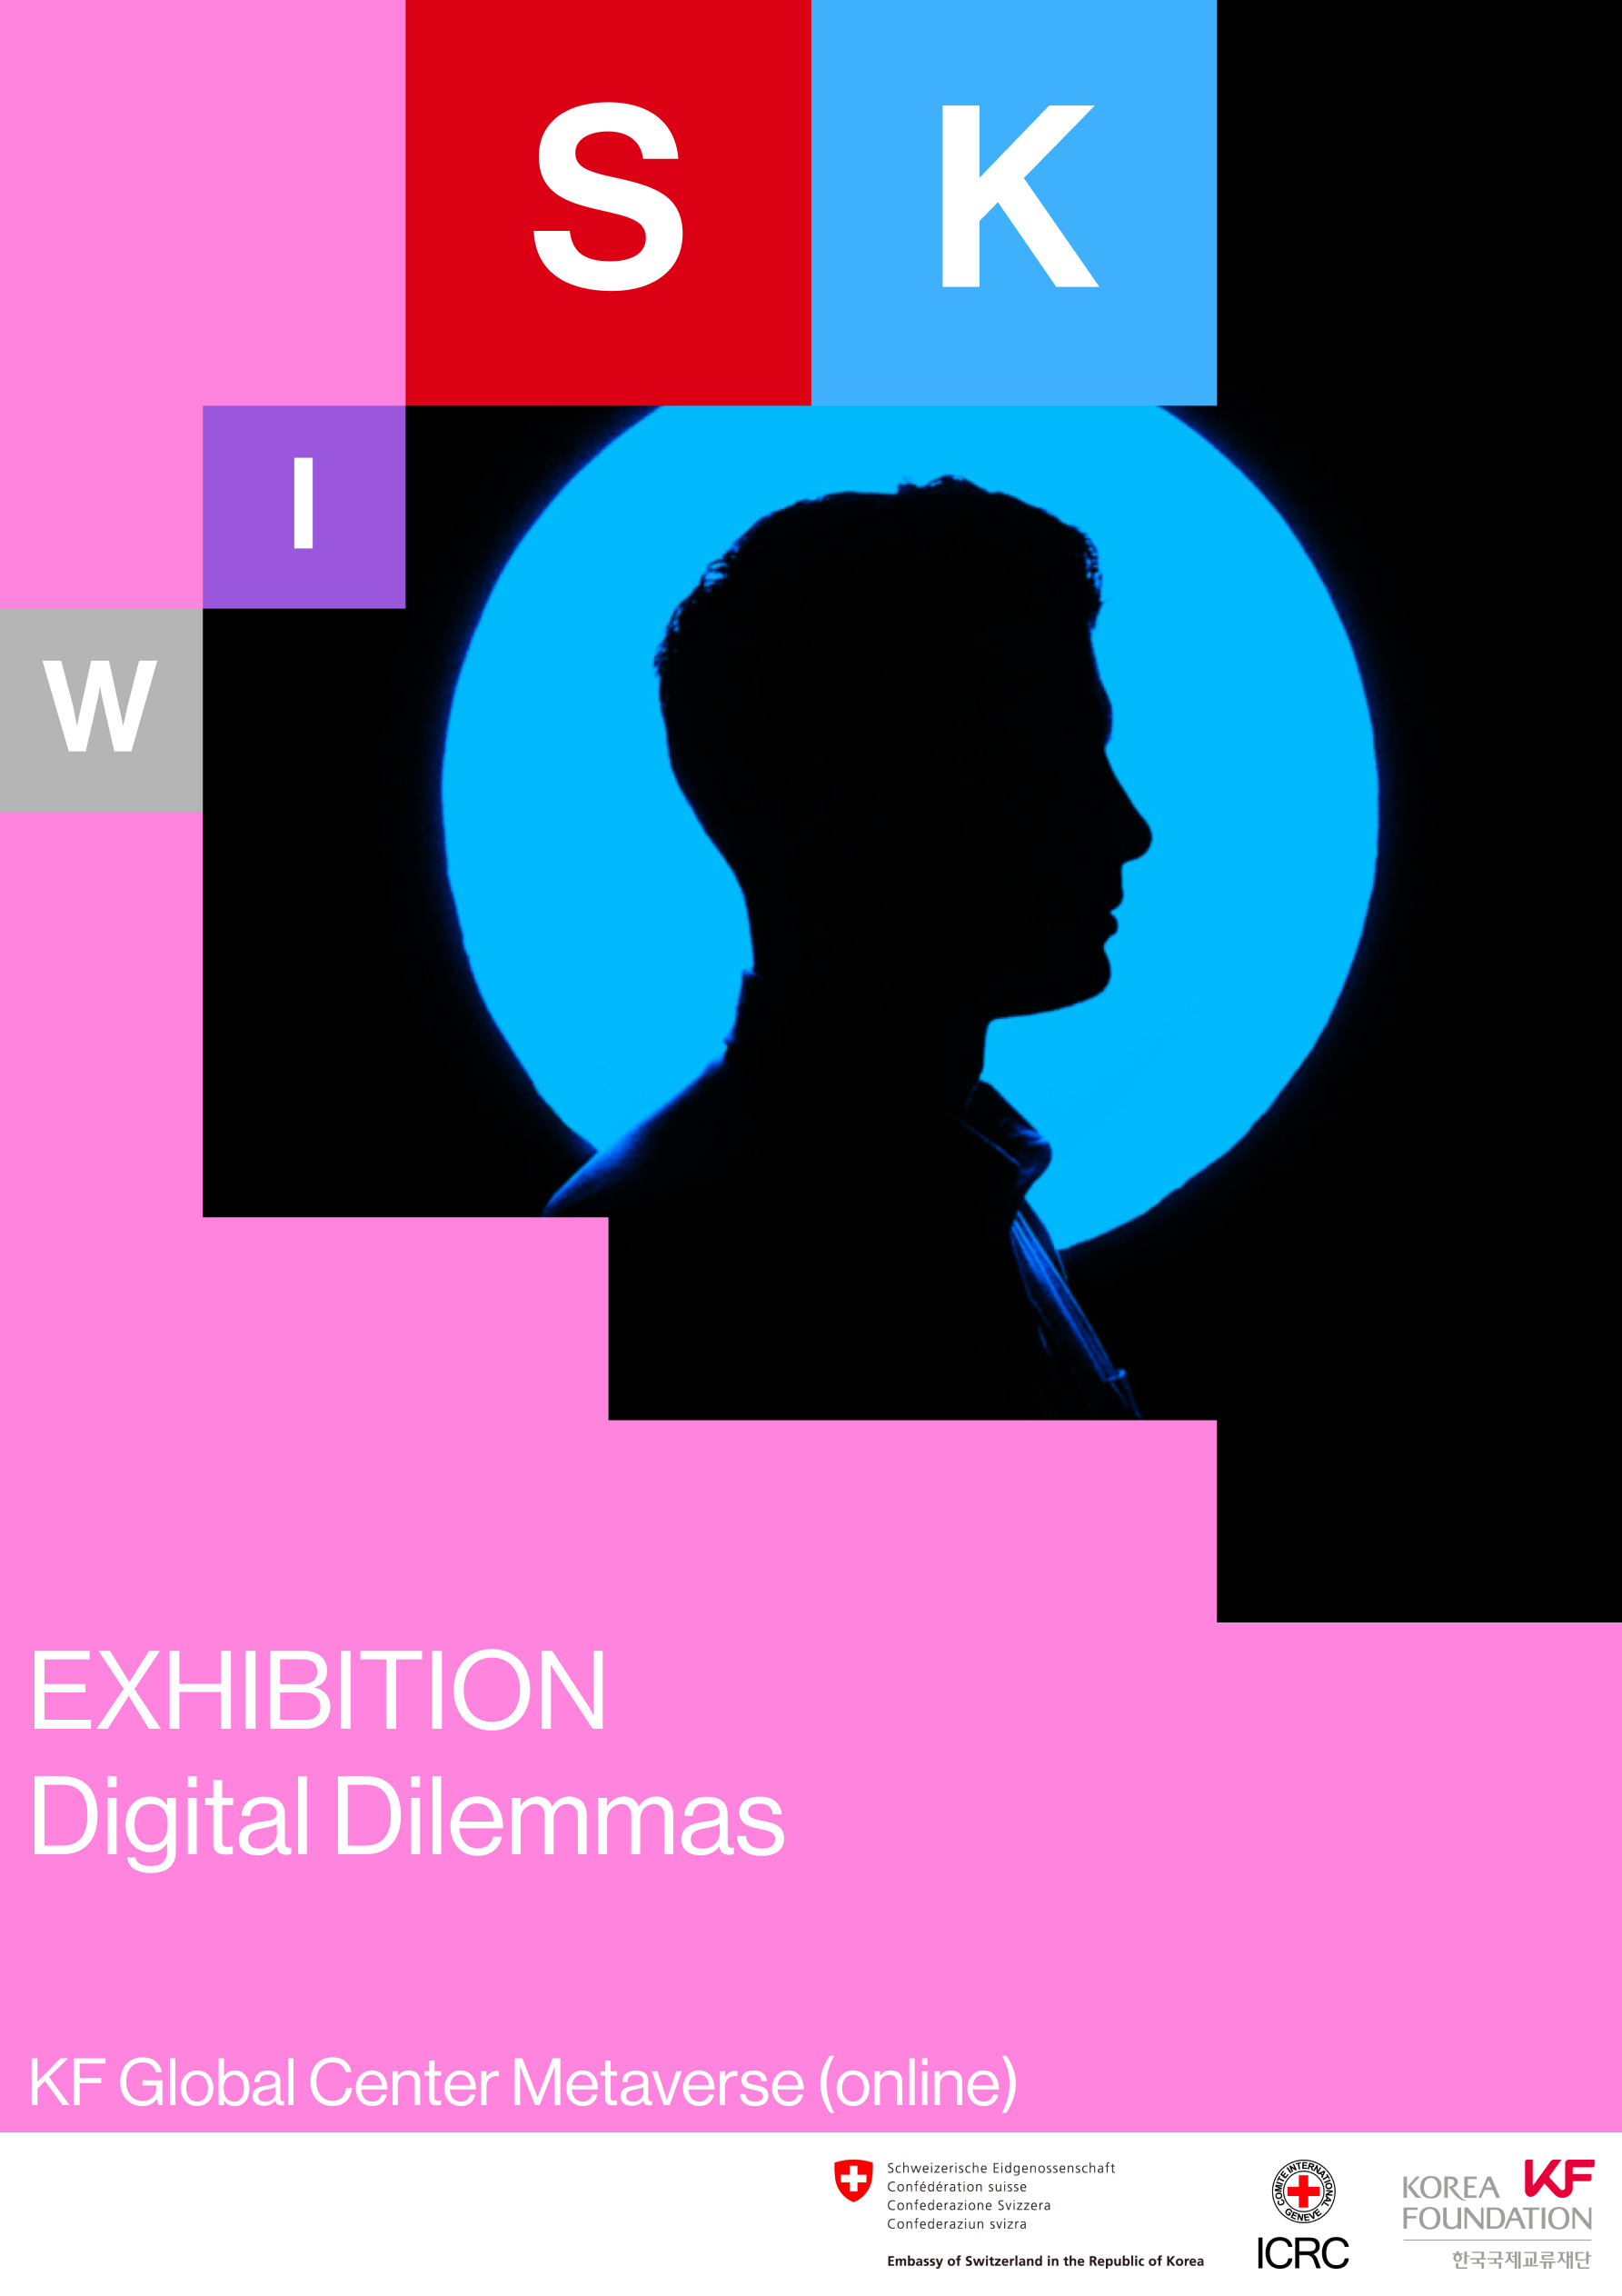 Metaverse Exhibition "Digital Dillemas"